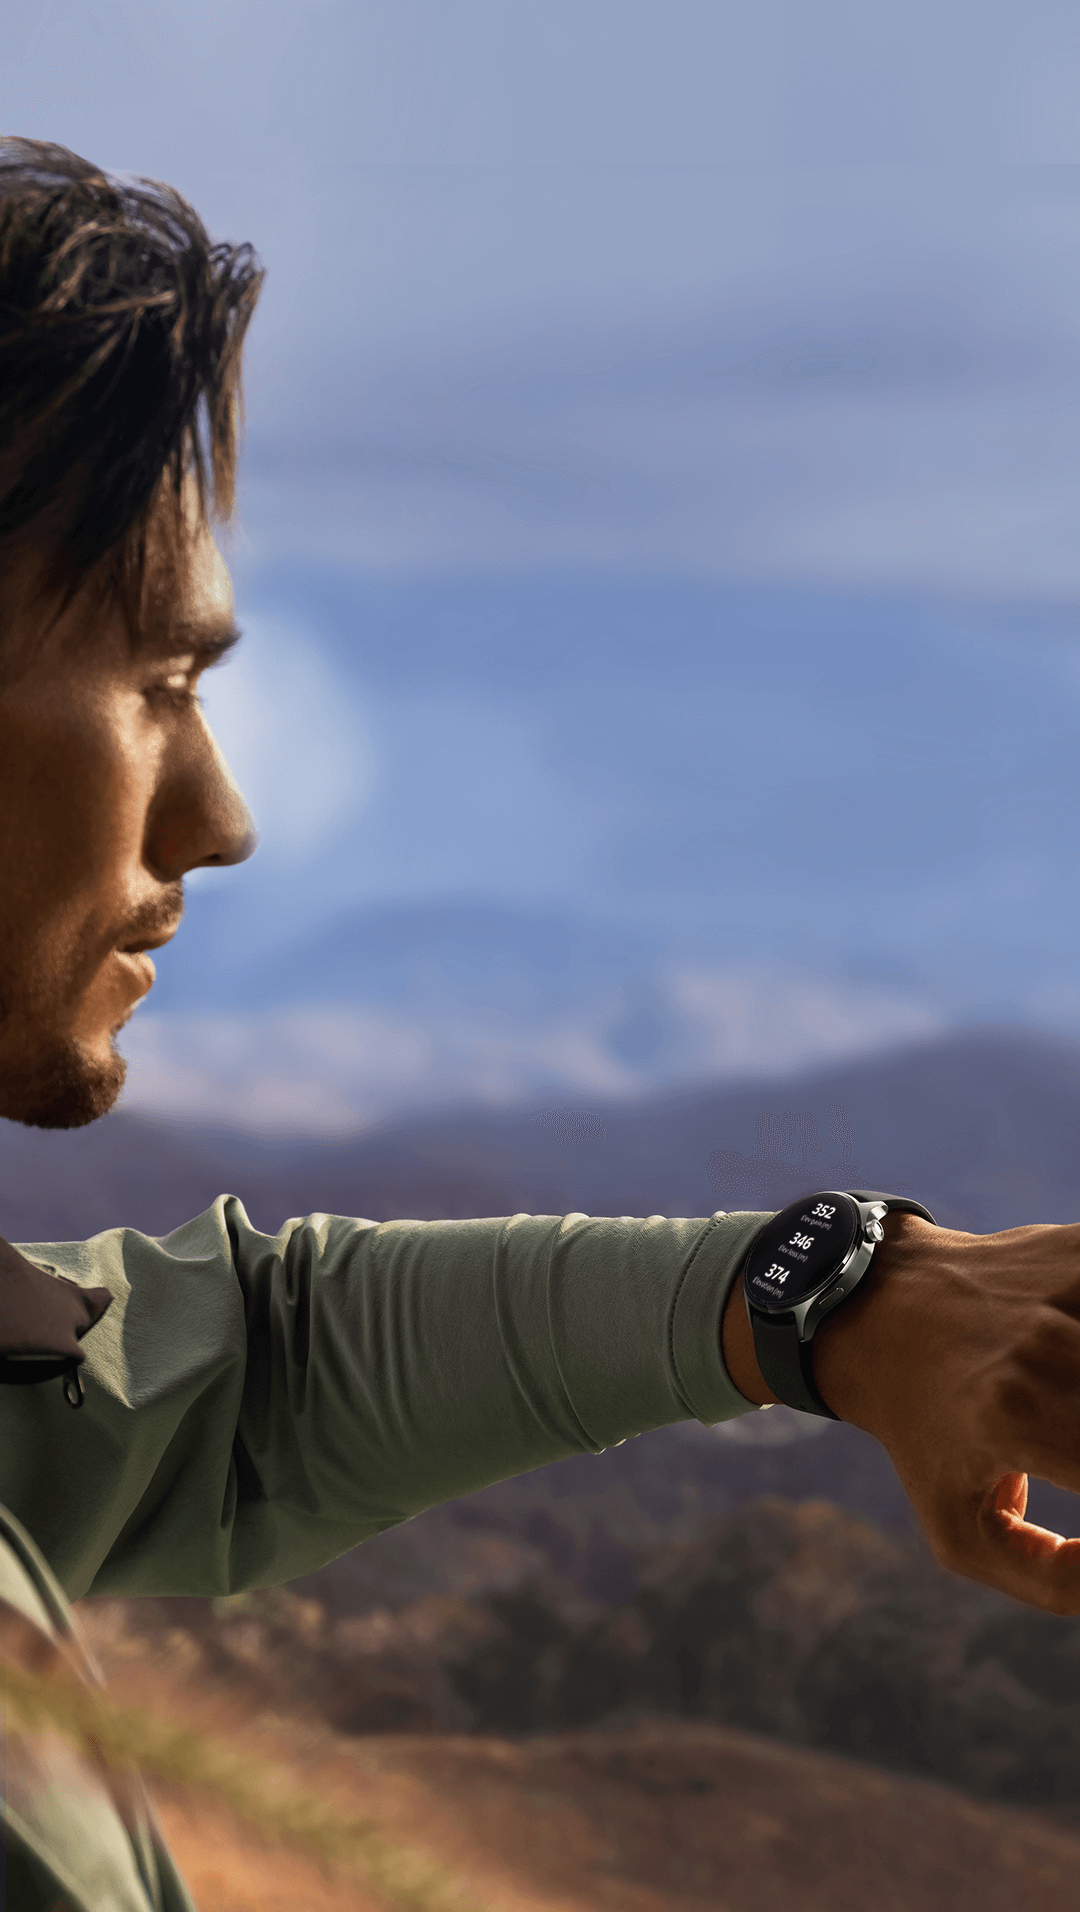 Smartwatch Xiaomi Watch S1 Pro/ Notificaciones/ Frecuencia Cardíaca/ GPS/  Plata : : Electrónica